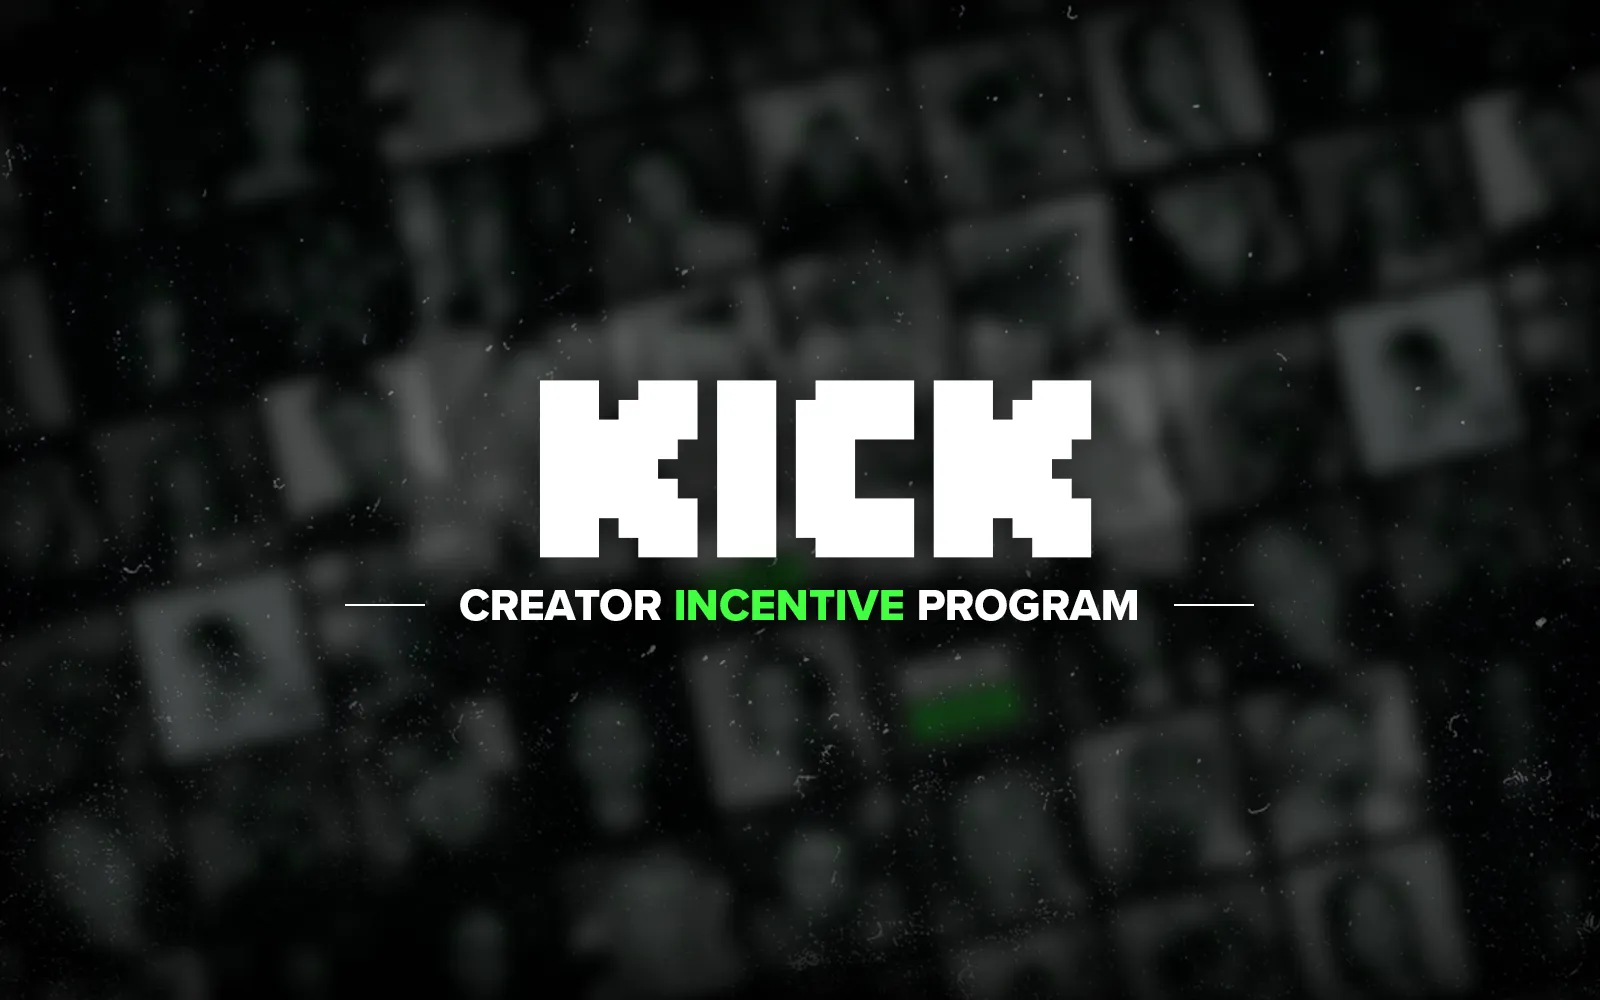 Kick Creator Incentive Program